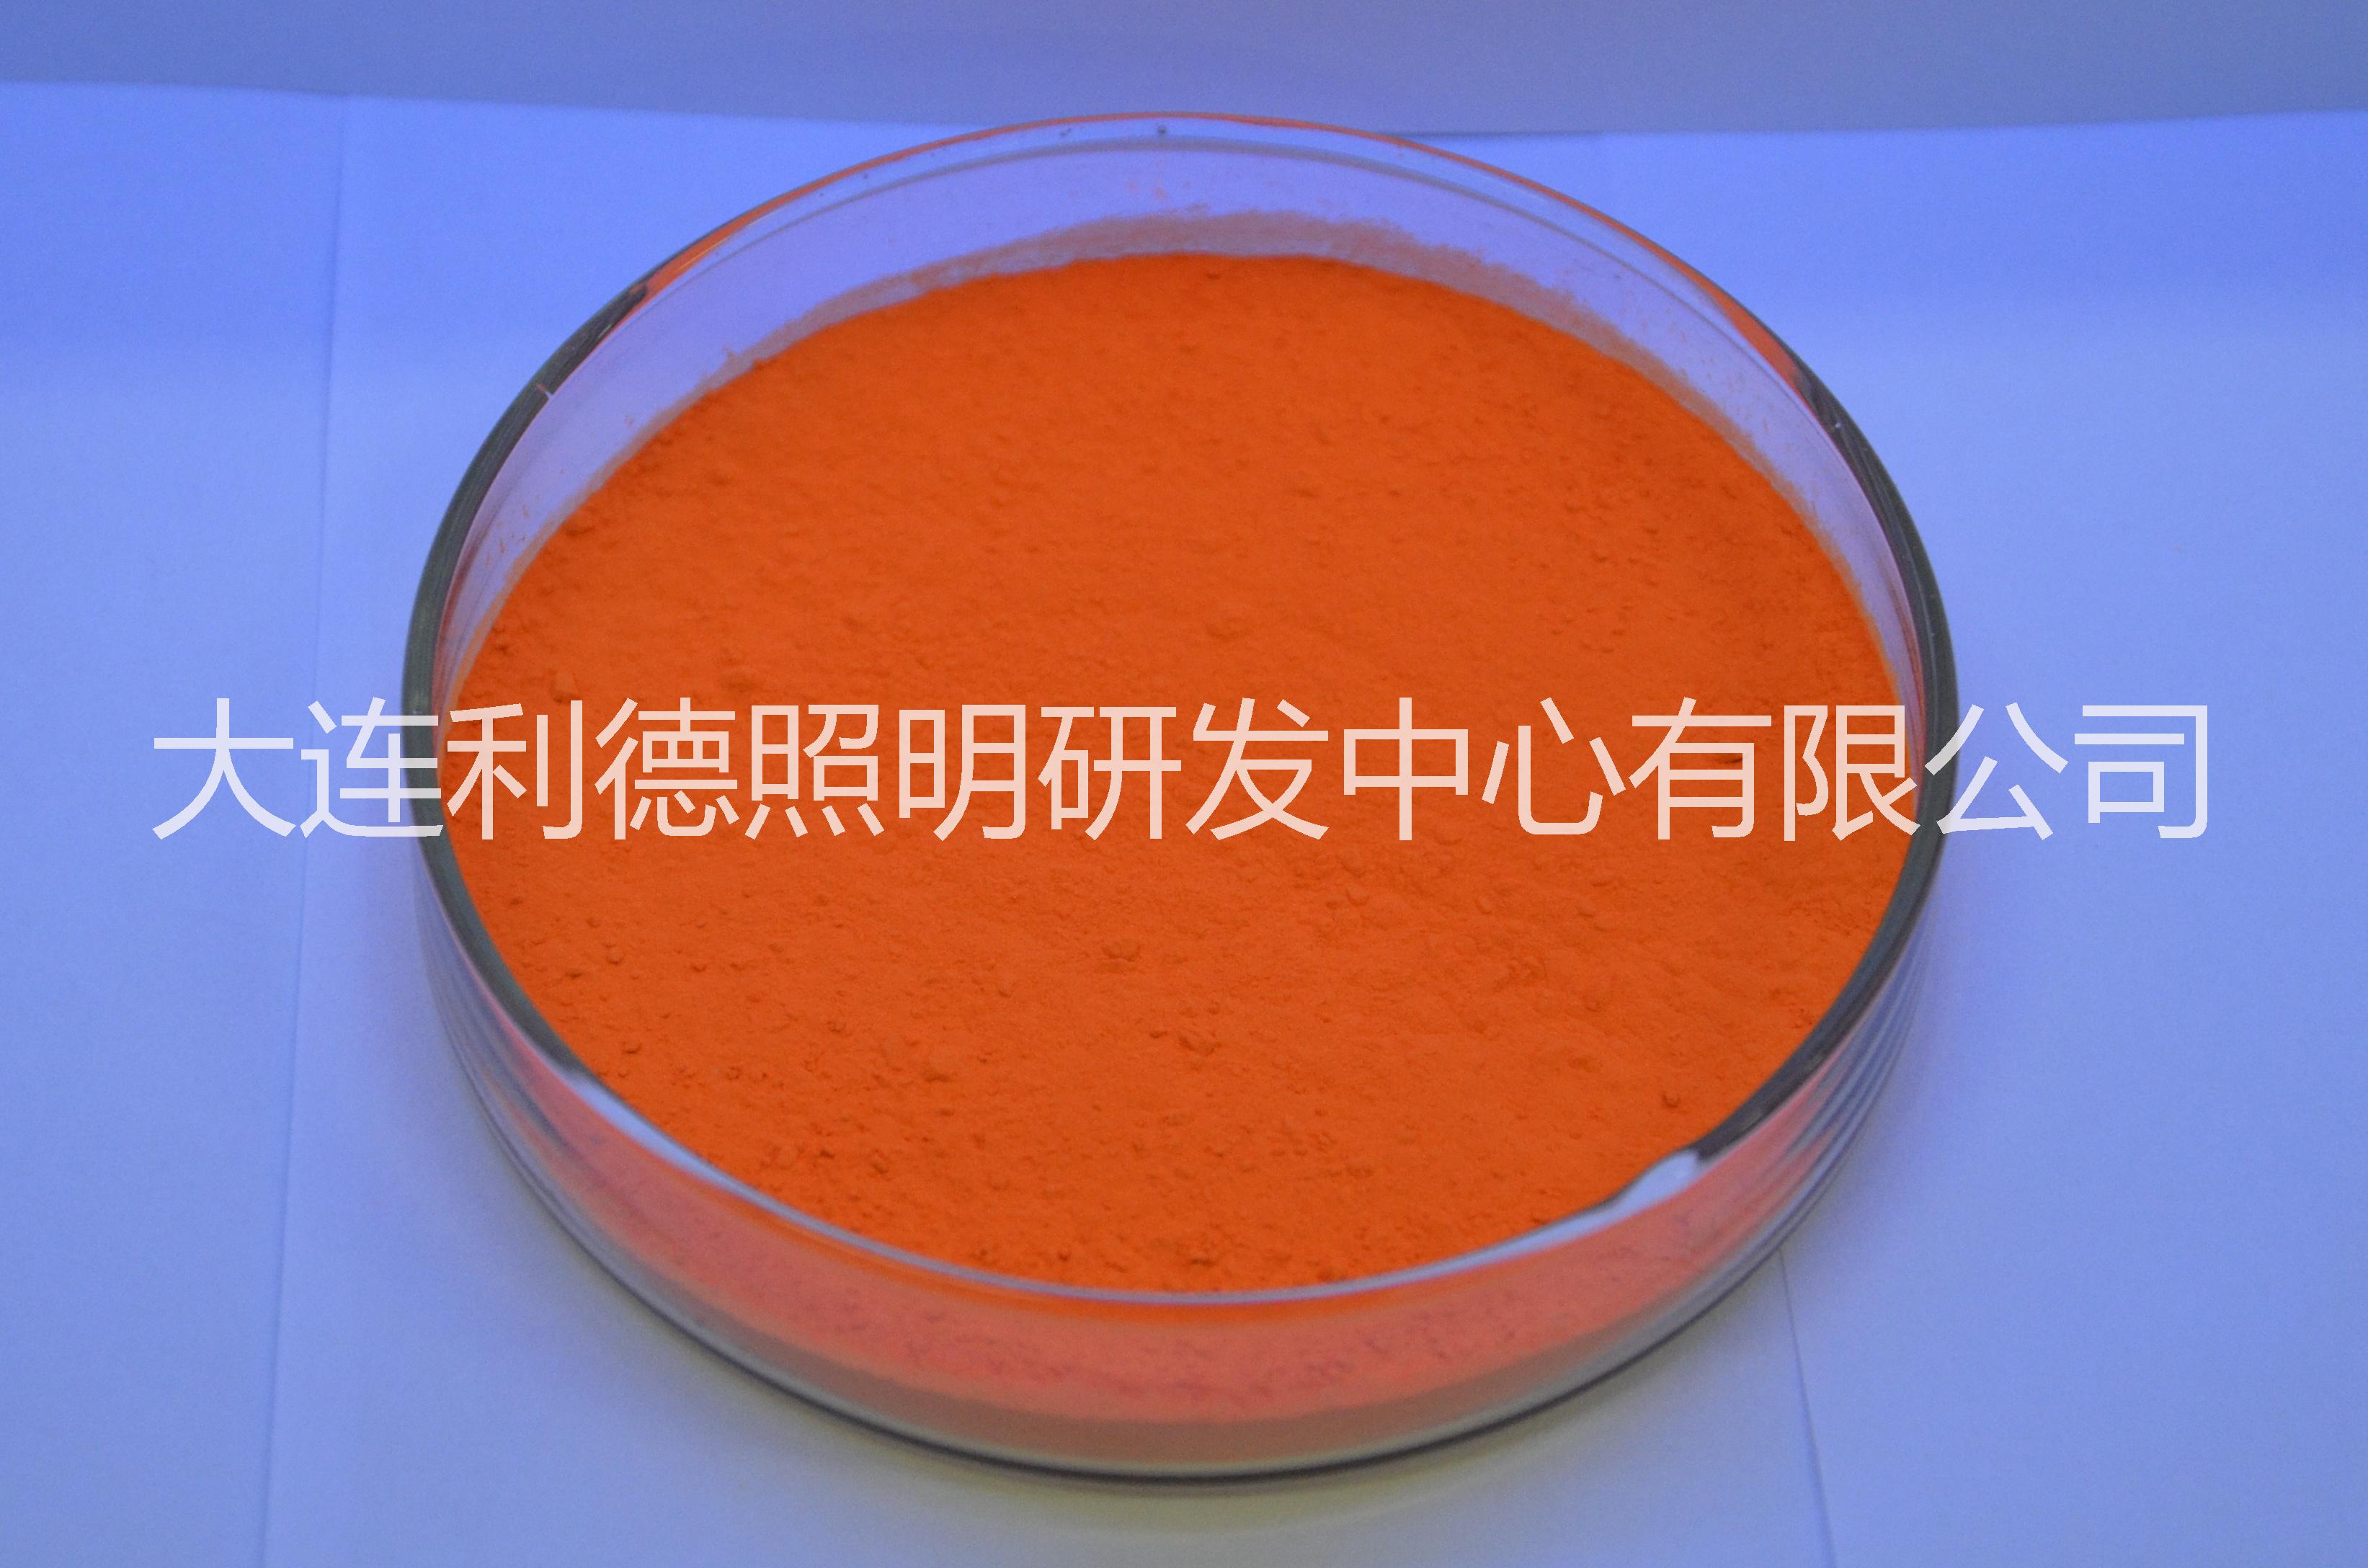 氮化物红粉LD-620-660 高显指高显色高亮度荧光粉